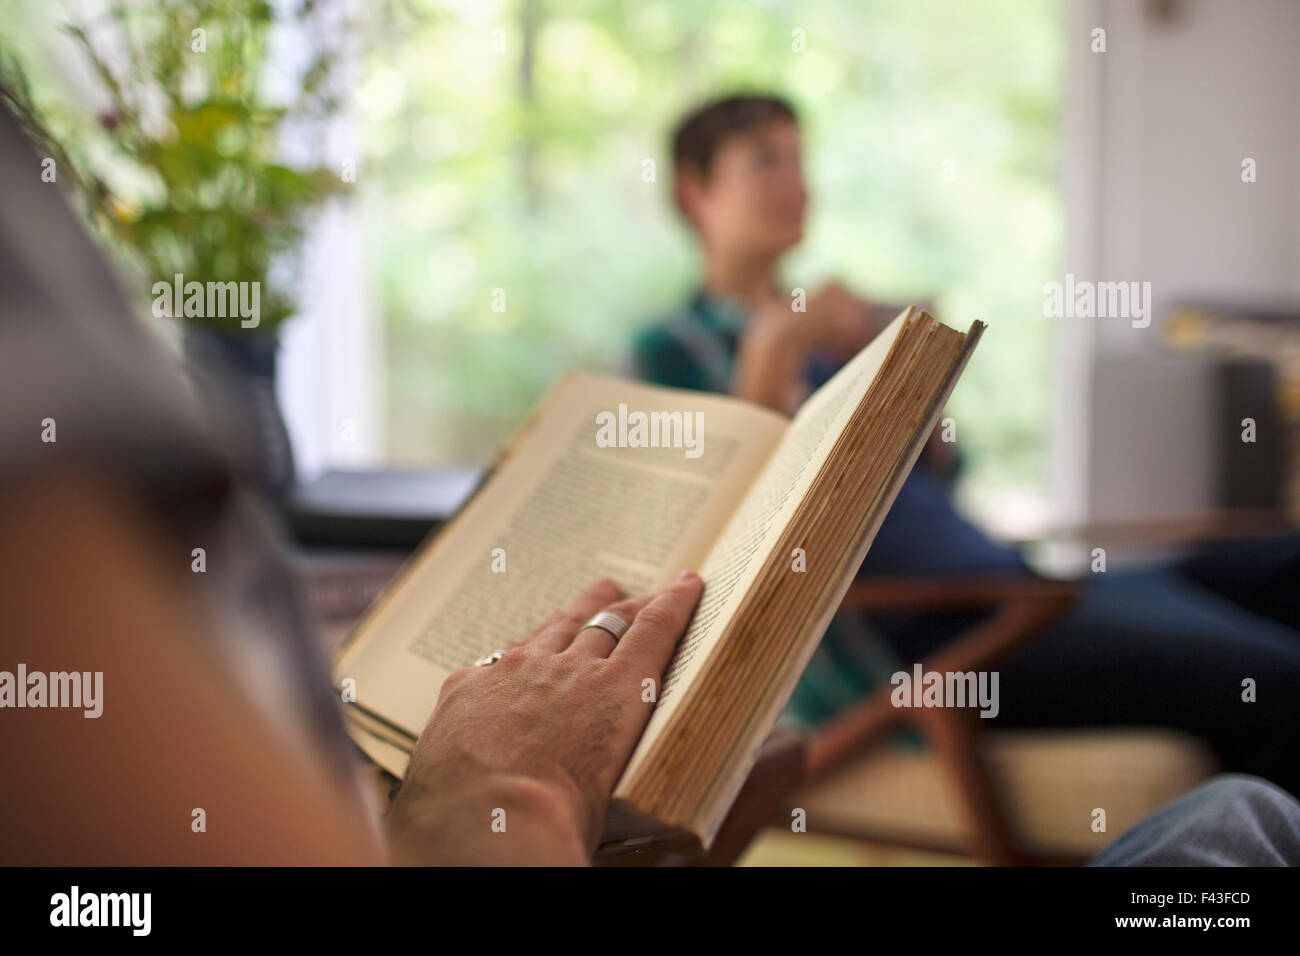 Una persona seduta a leggere un libro. Foto Stock